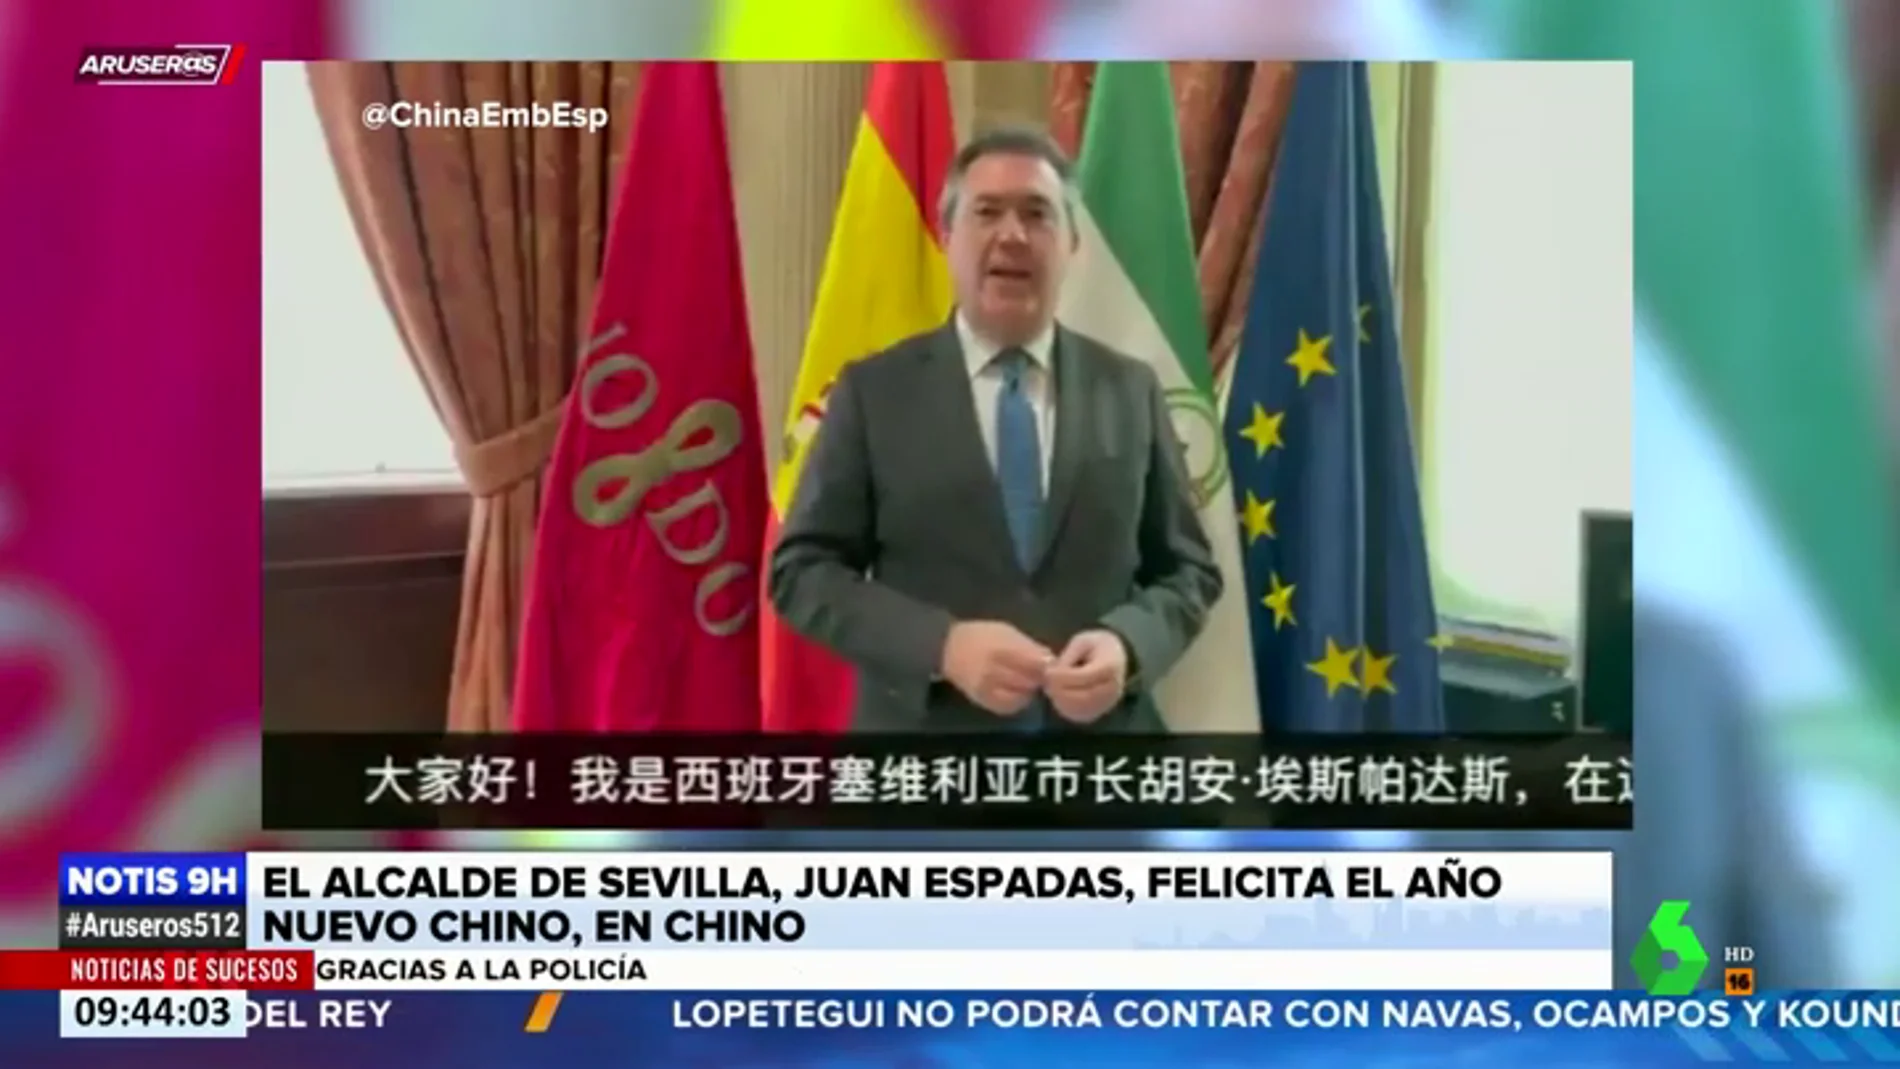 El vídeo del alcalde de Sevilla hablando en chino para felicitar el Año Nuevo que se ha hecho viral